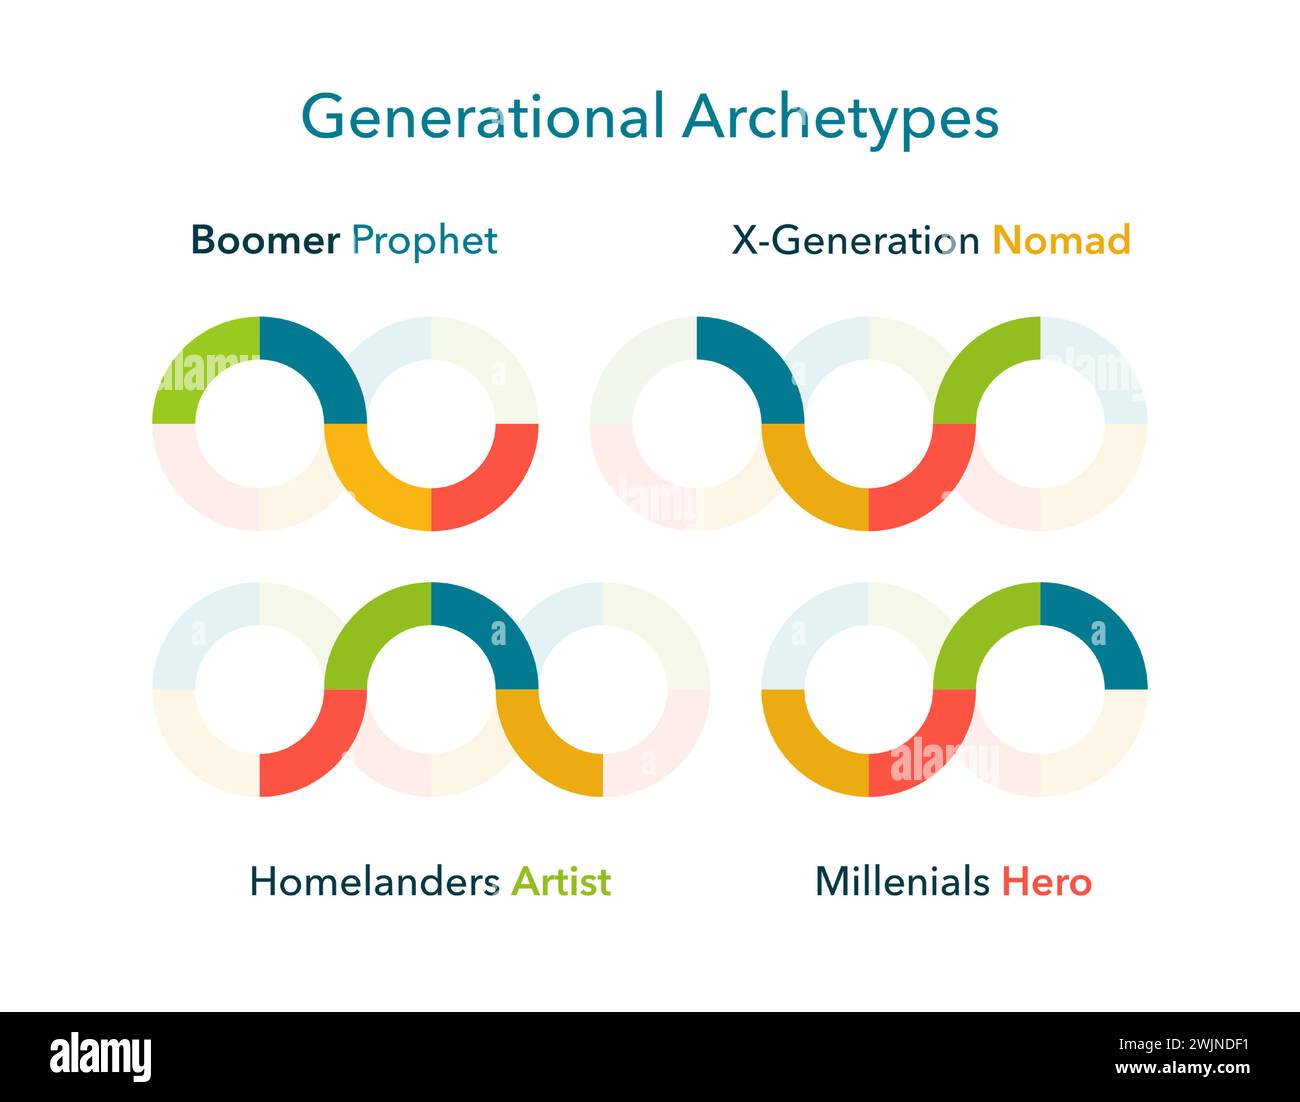 Generationenarchetypen festgelegt. Bunte Logos für Boomer, X-Generation, Homelanders und Millennials. Kulturelle Identität und Generationsunterschiede im Design. Vektorabbildung. Stock Vektor